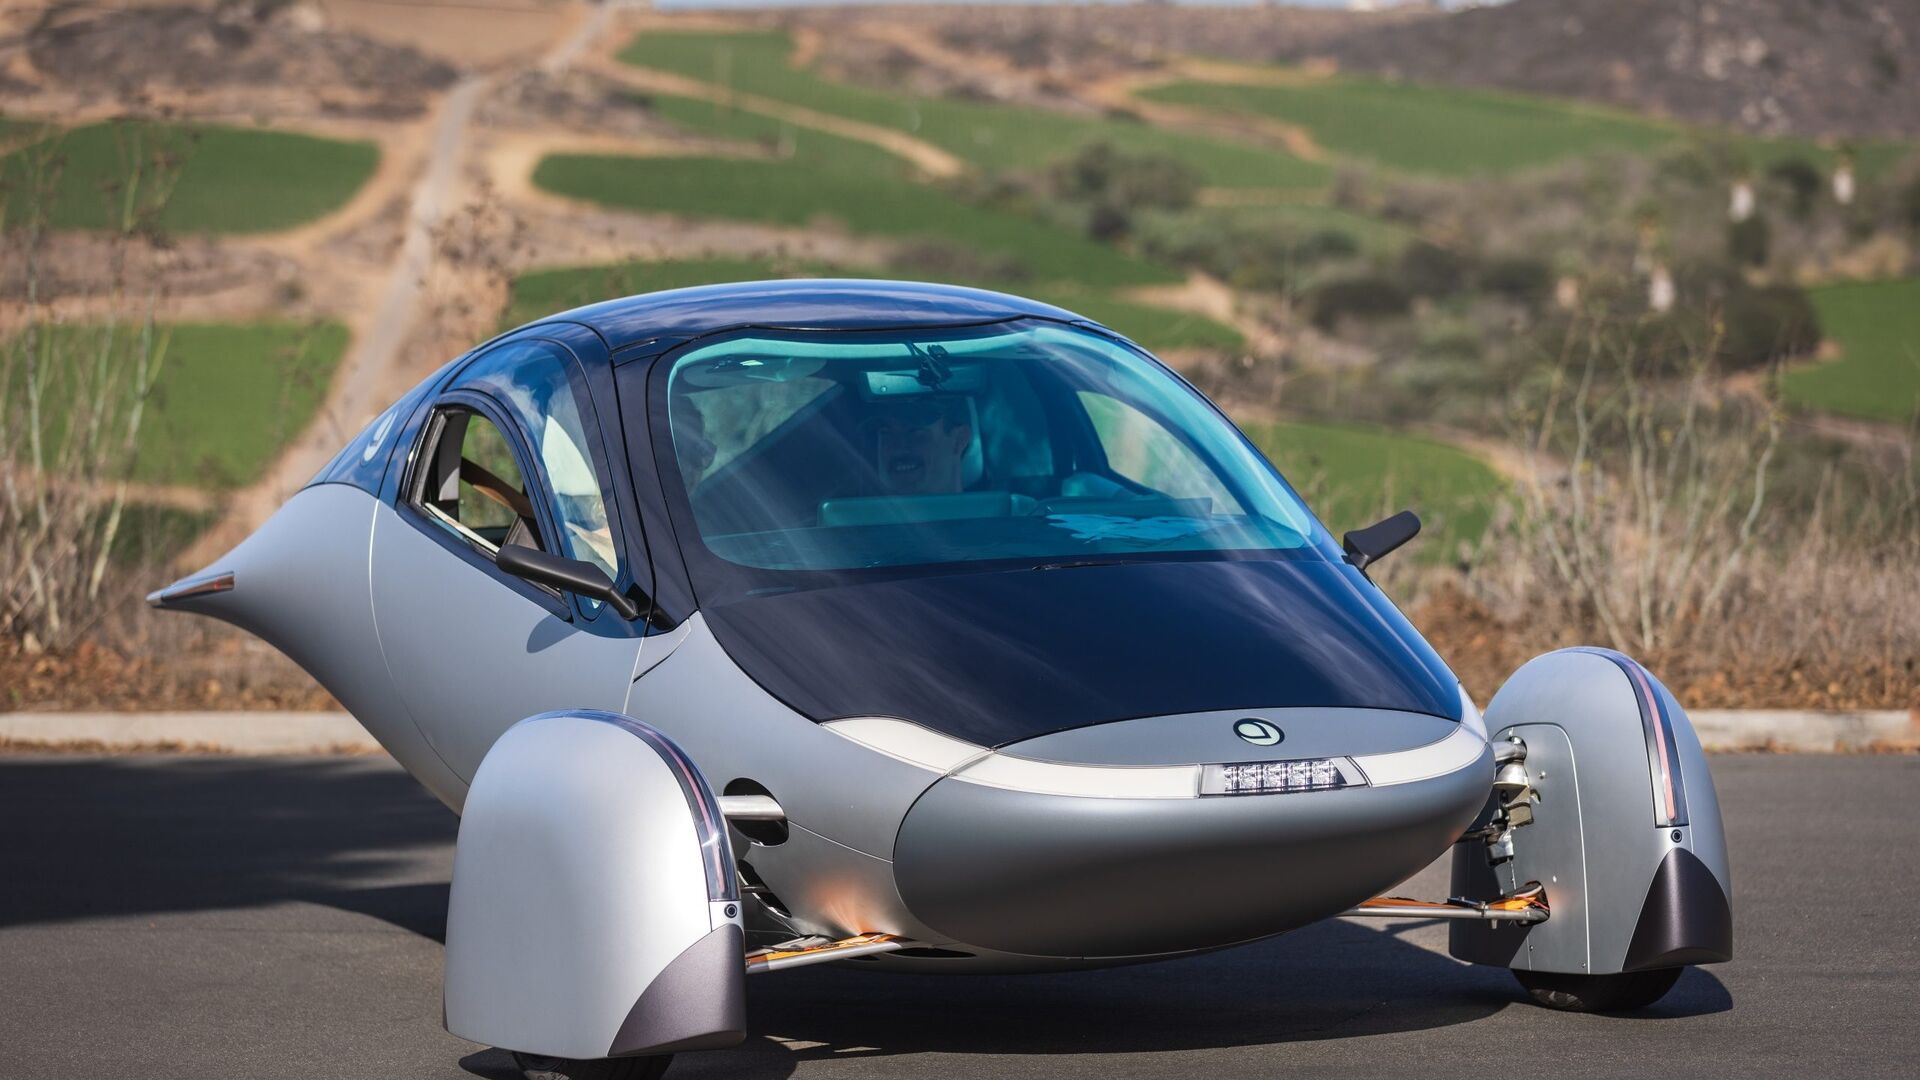 Carro solar: o Aptera Delta é o carro mais sustentável do mundo, com autonomia de 1600 km com bateria e 70 km com energia solar